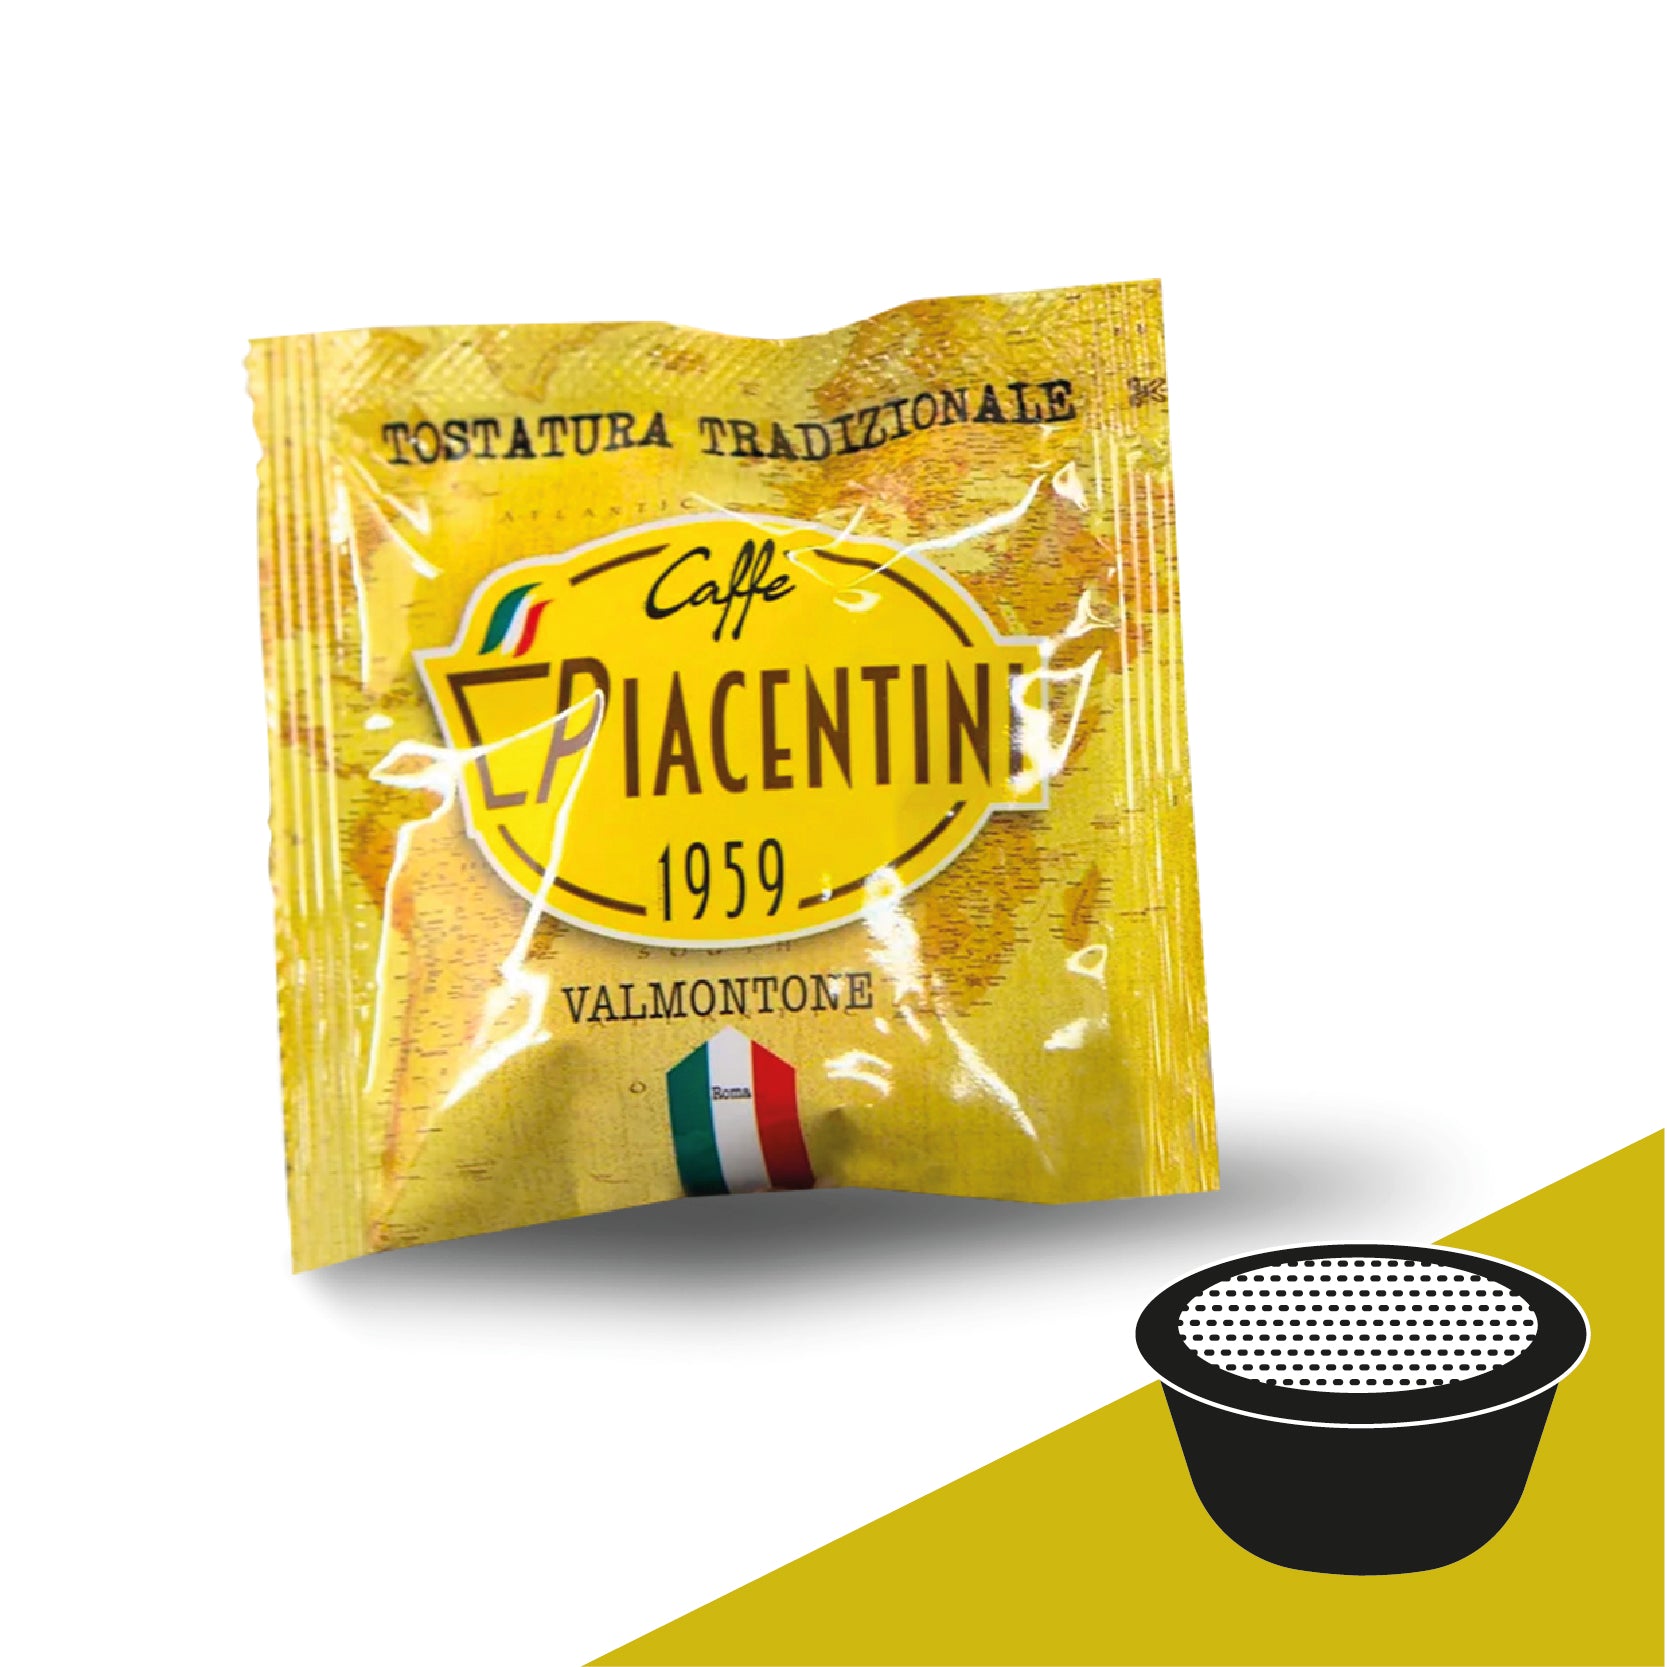 Box 100PZ compatibili Bialetti 2.0 – Caffe Piacentini Valmontone